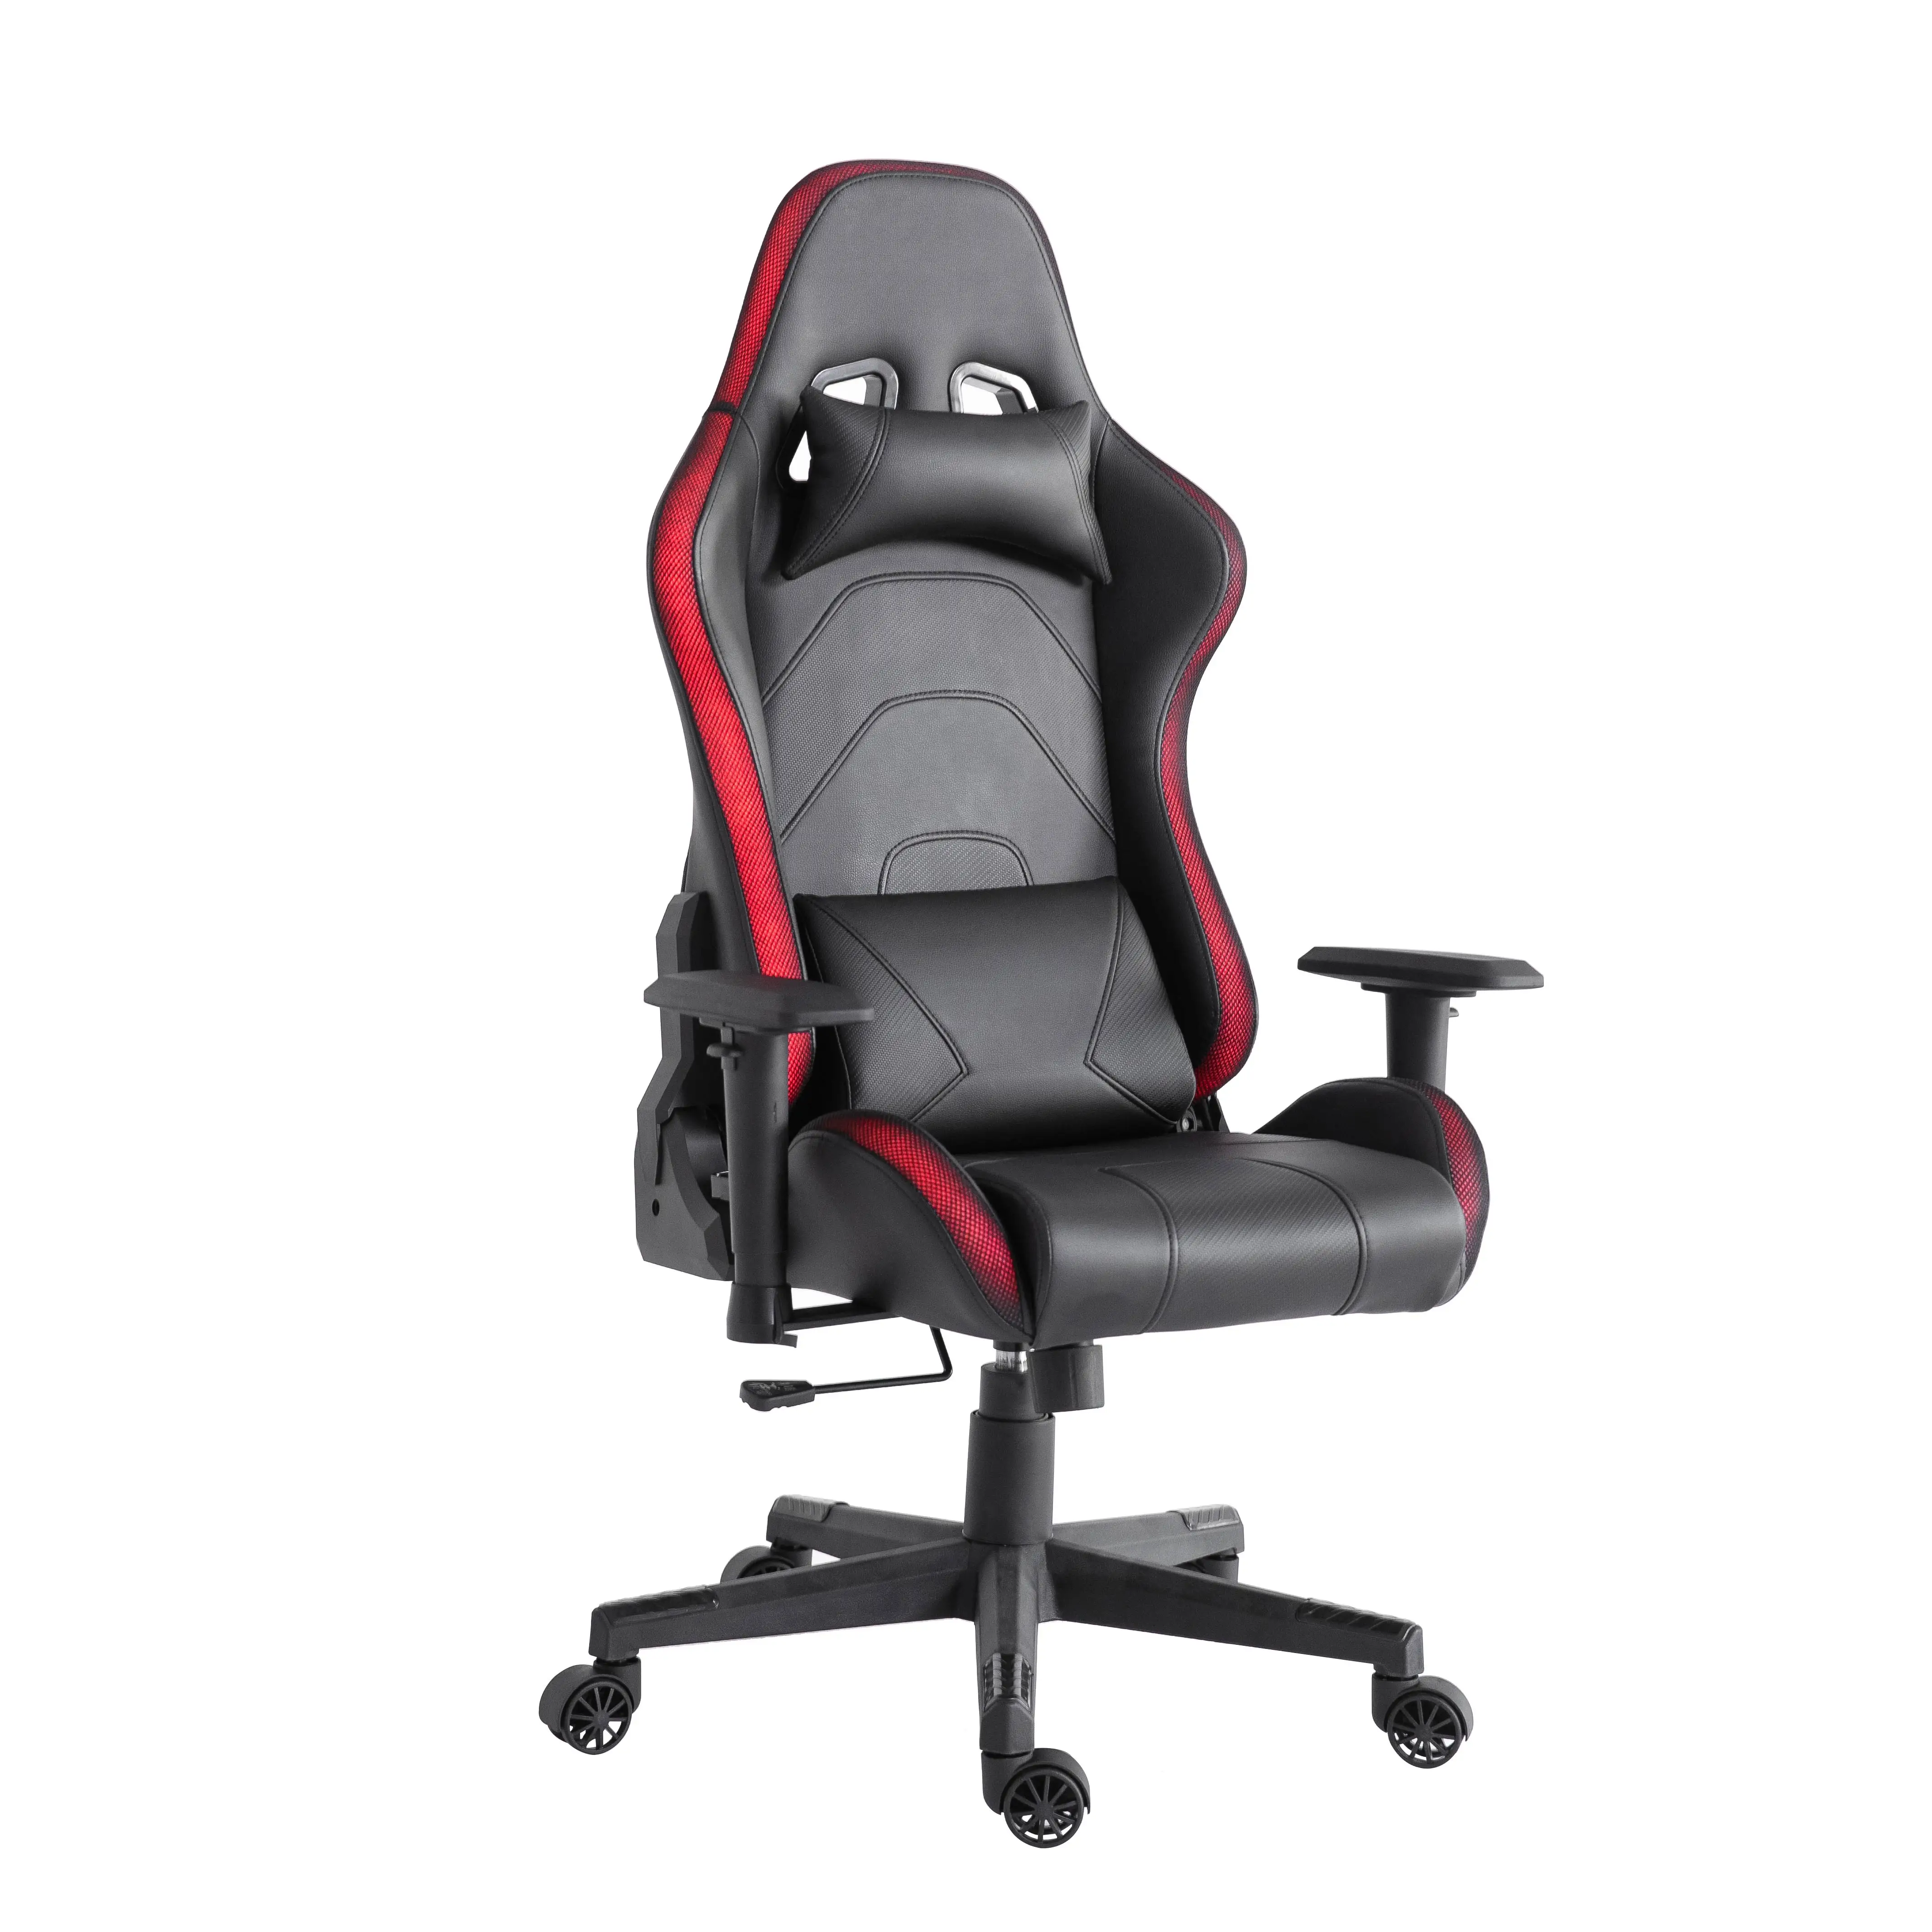 Новинка 2021, вращающийся стул, Офисный Компьютерный кожаный игровой стул со светодиодной подсветкой RGB, вращающийся игровой стул